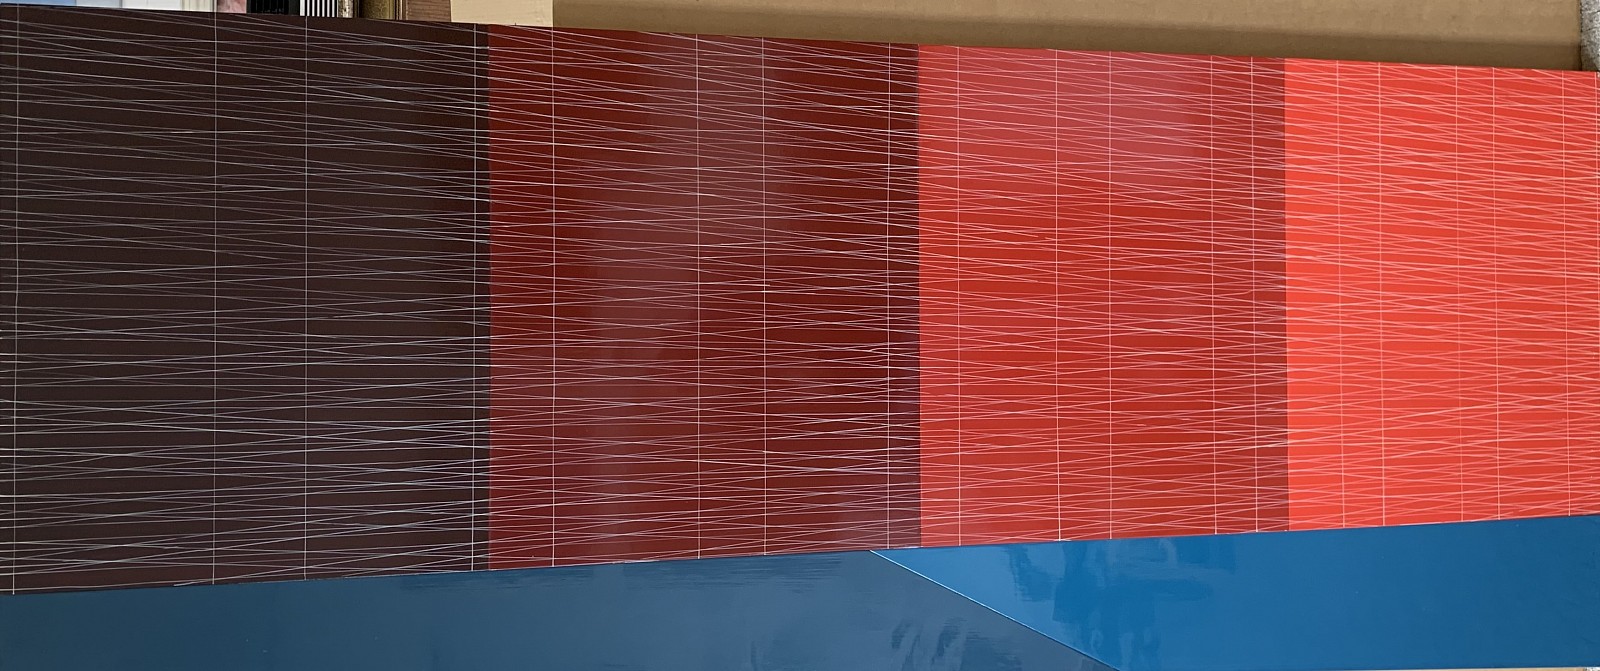 Kate Shepherd, Slanted Blue Ground, Four Red Walls (Marron to Poppy), 2004
Enamel on panel, 32 x 72 in.
trapezoidal
SHE001